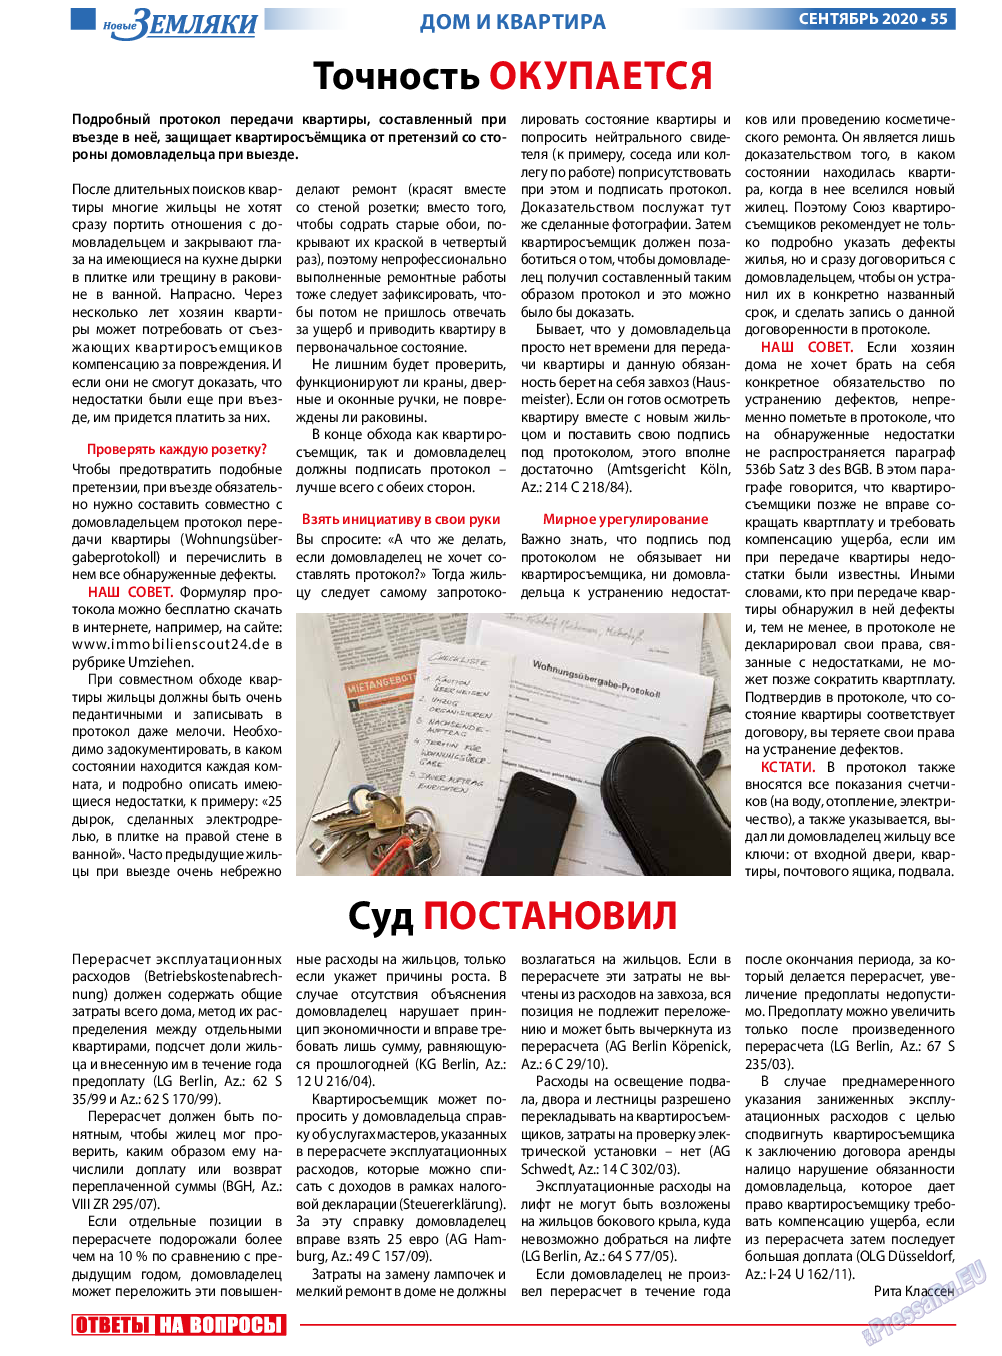 Новые Земляки, газета. 2020 №9 стр.55